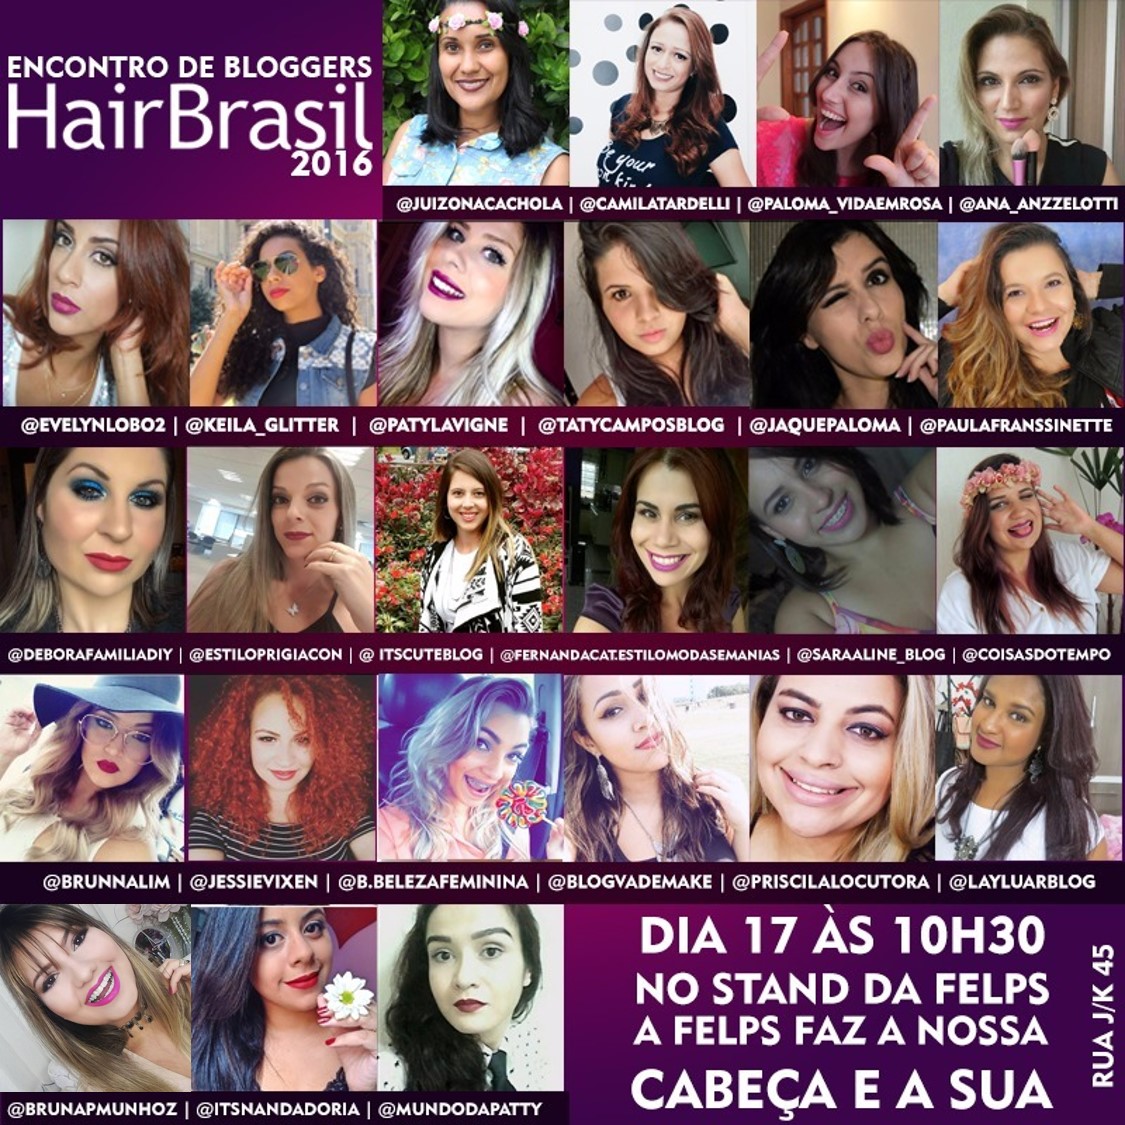 Venha me conhecer na Hair Brasil 2016 com a Felps!